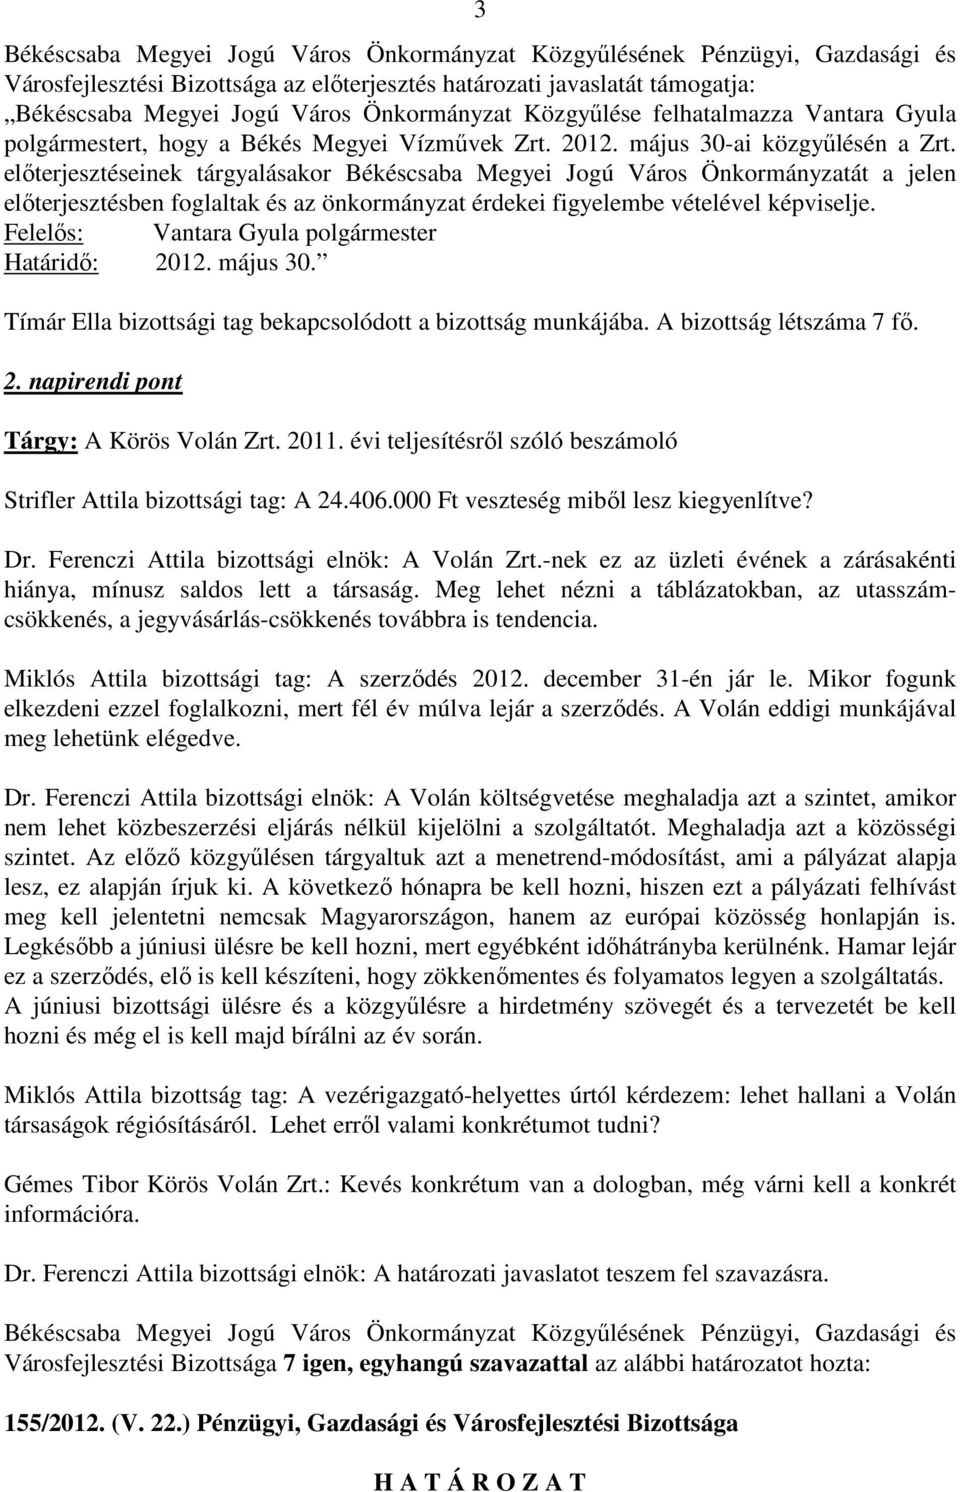 Felelős: Vantara Gyula polgármester Határidő: 2012. május 30. Tímár Ella bizottsági tag bekapcsolódott a bizottság munkájába. A bizottság létszáma 7 fő. 2. napirendi pont Tárgy: A Körös Volán Zrt.